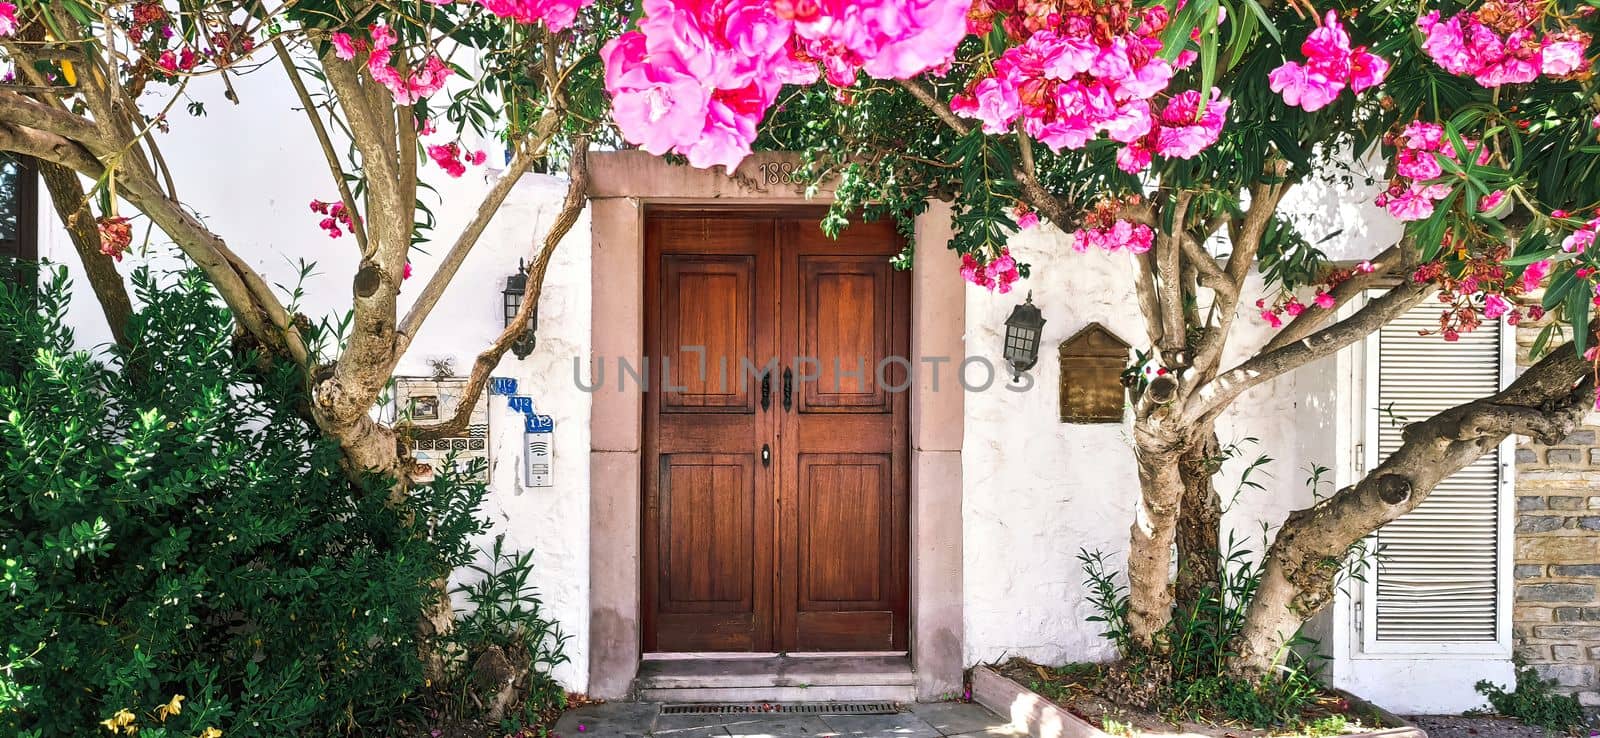 Old wooden door with flowers